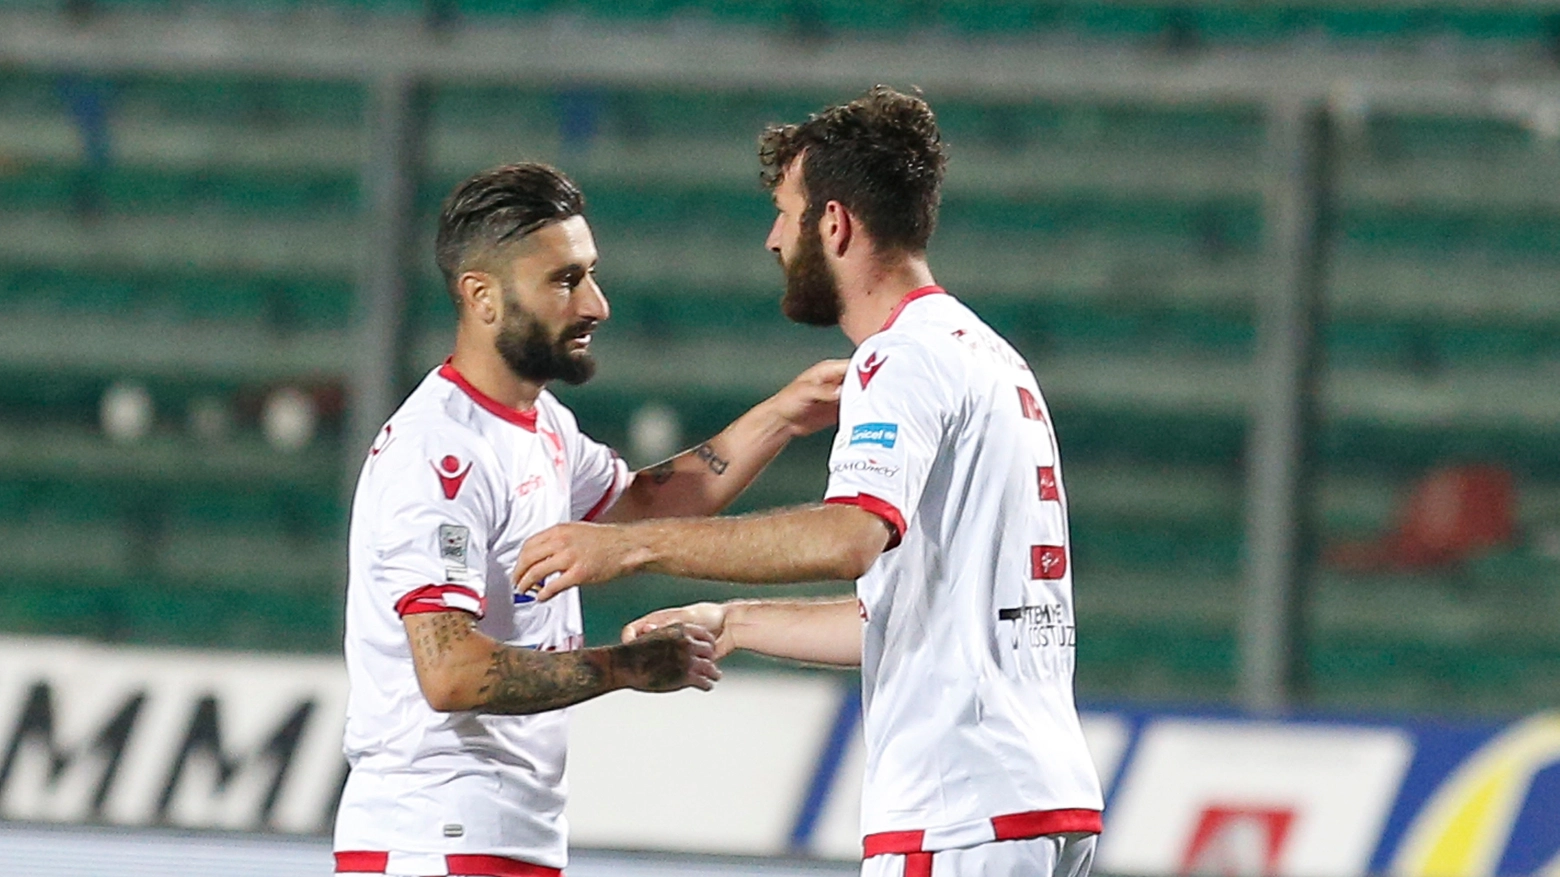 Padova-Ancona, Favalli celebra il gol del 2-1 (LaPresse)